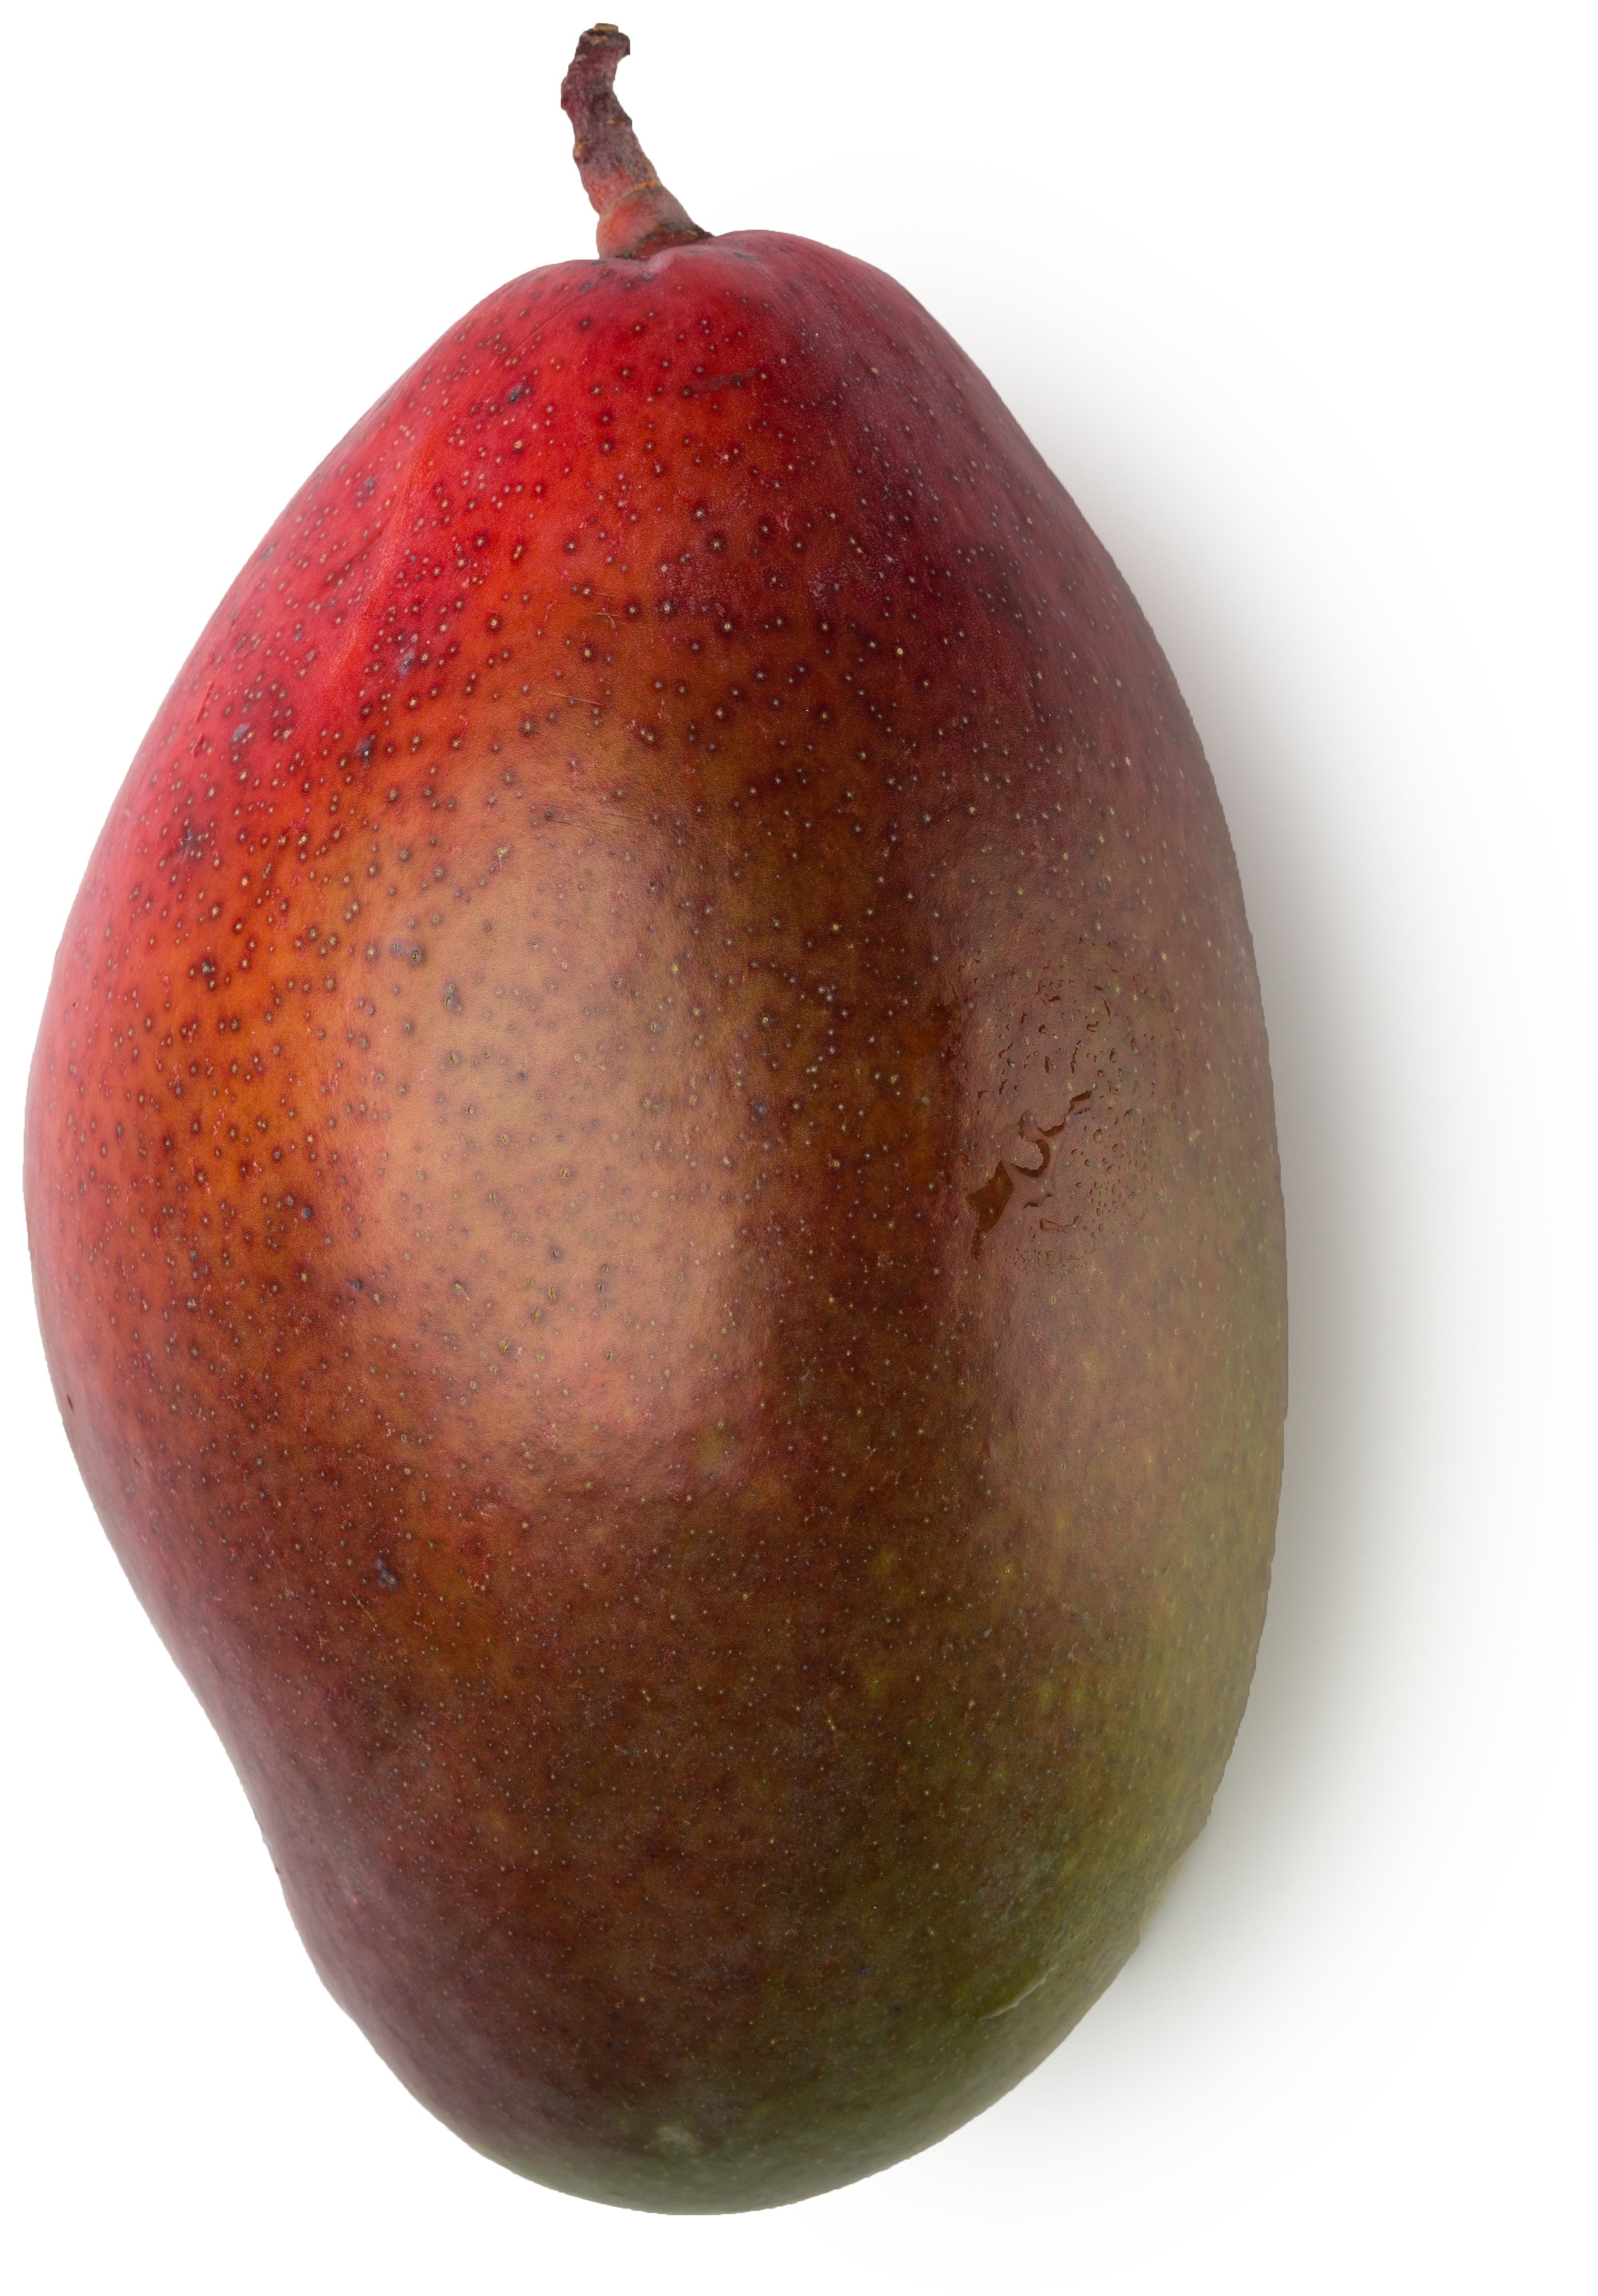 Essenza Assoluta di Foglie di Mango (Mangifera indica)